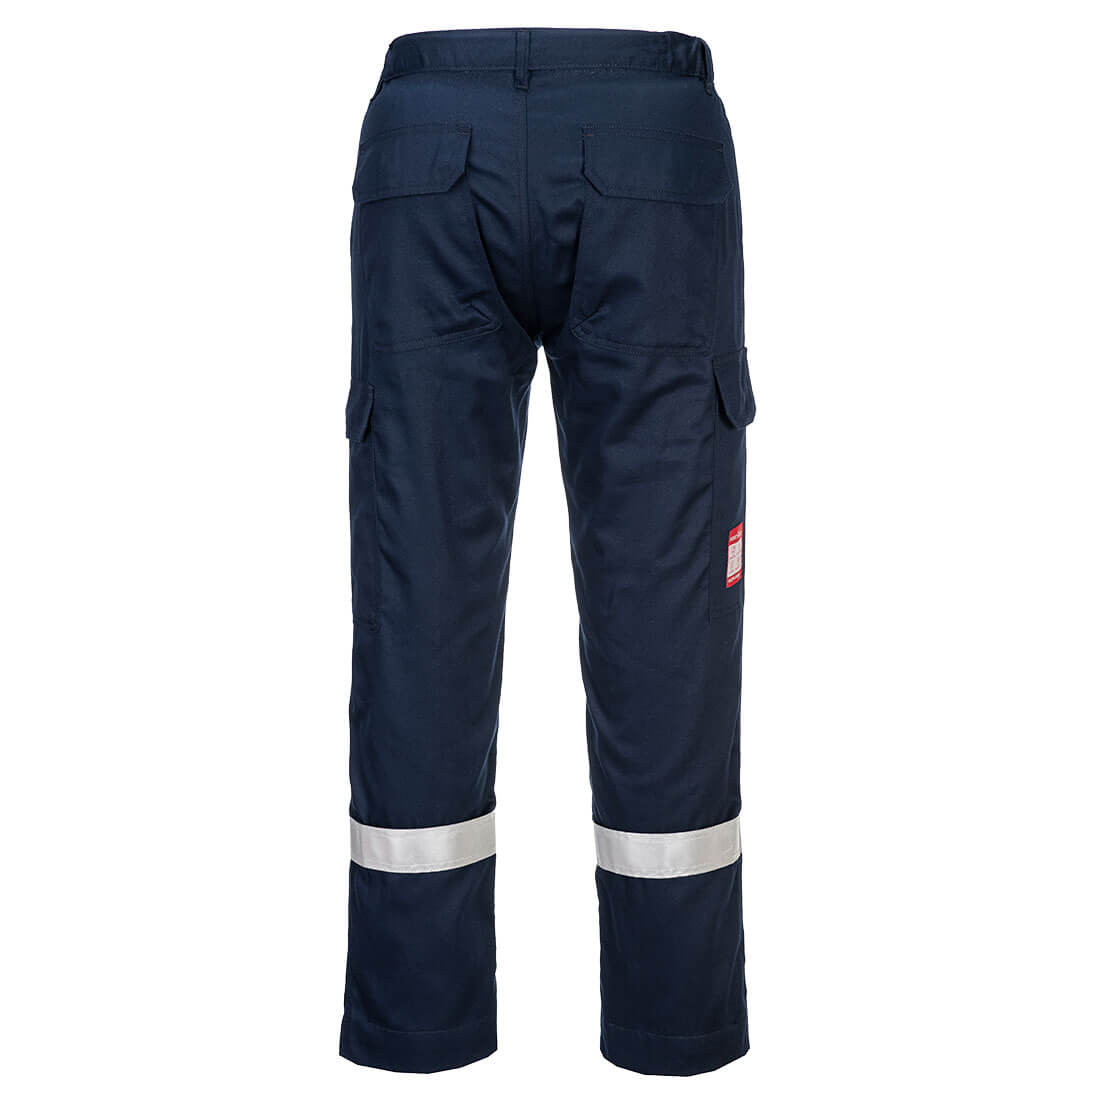 Pantaloni antistatici leggeri FR - Abbigliamento di protezione